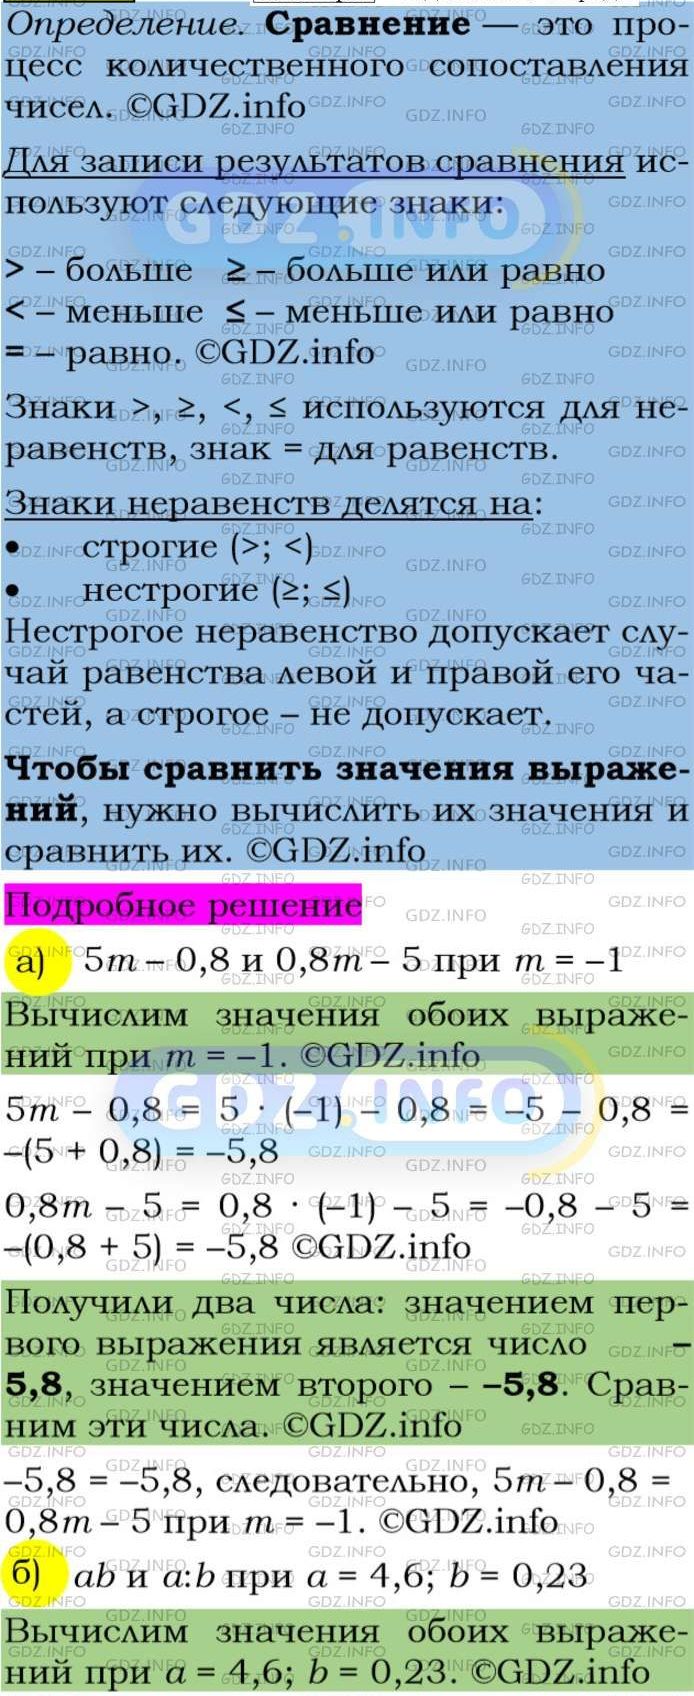 Фото подробного решения: Номер задания №72 из ГДЗ по Алгебре 7 класс: Макарычев Ю.Н.